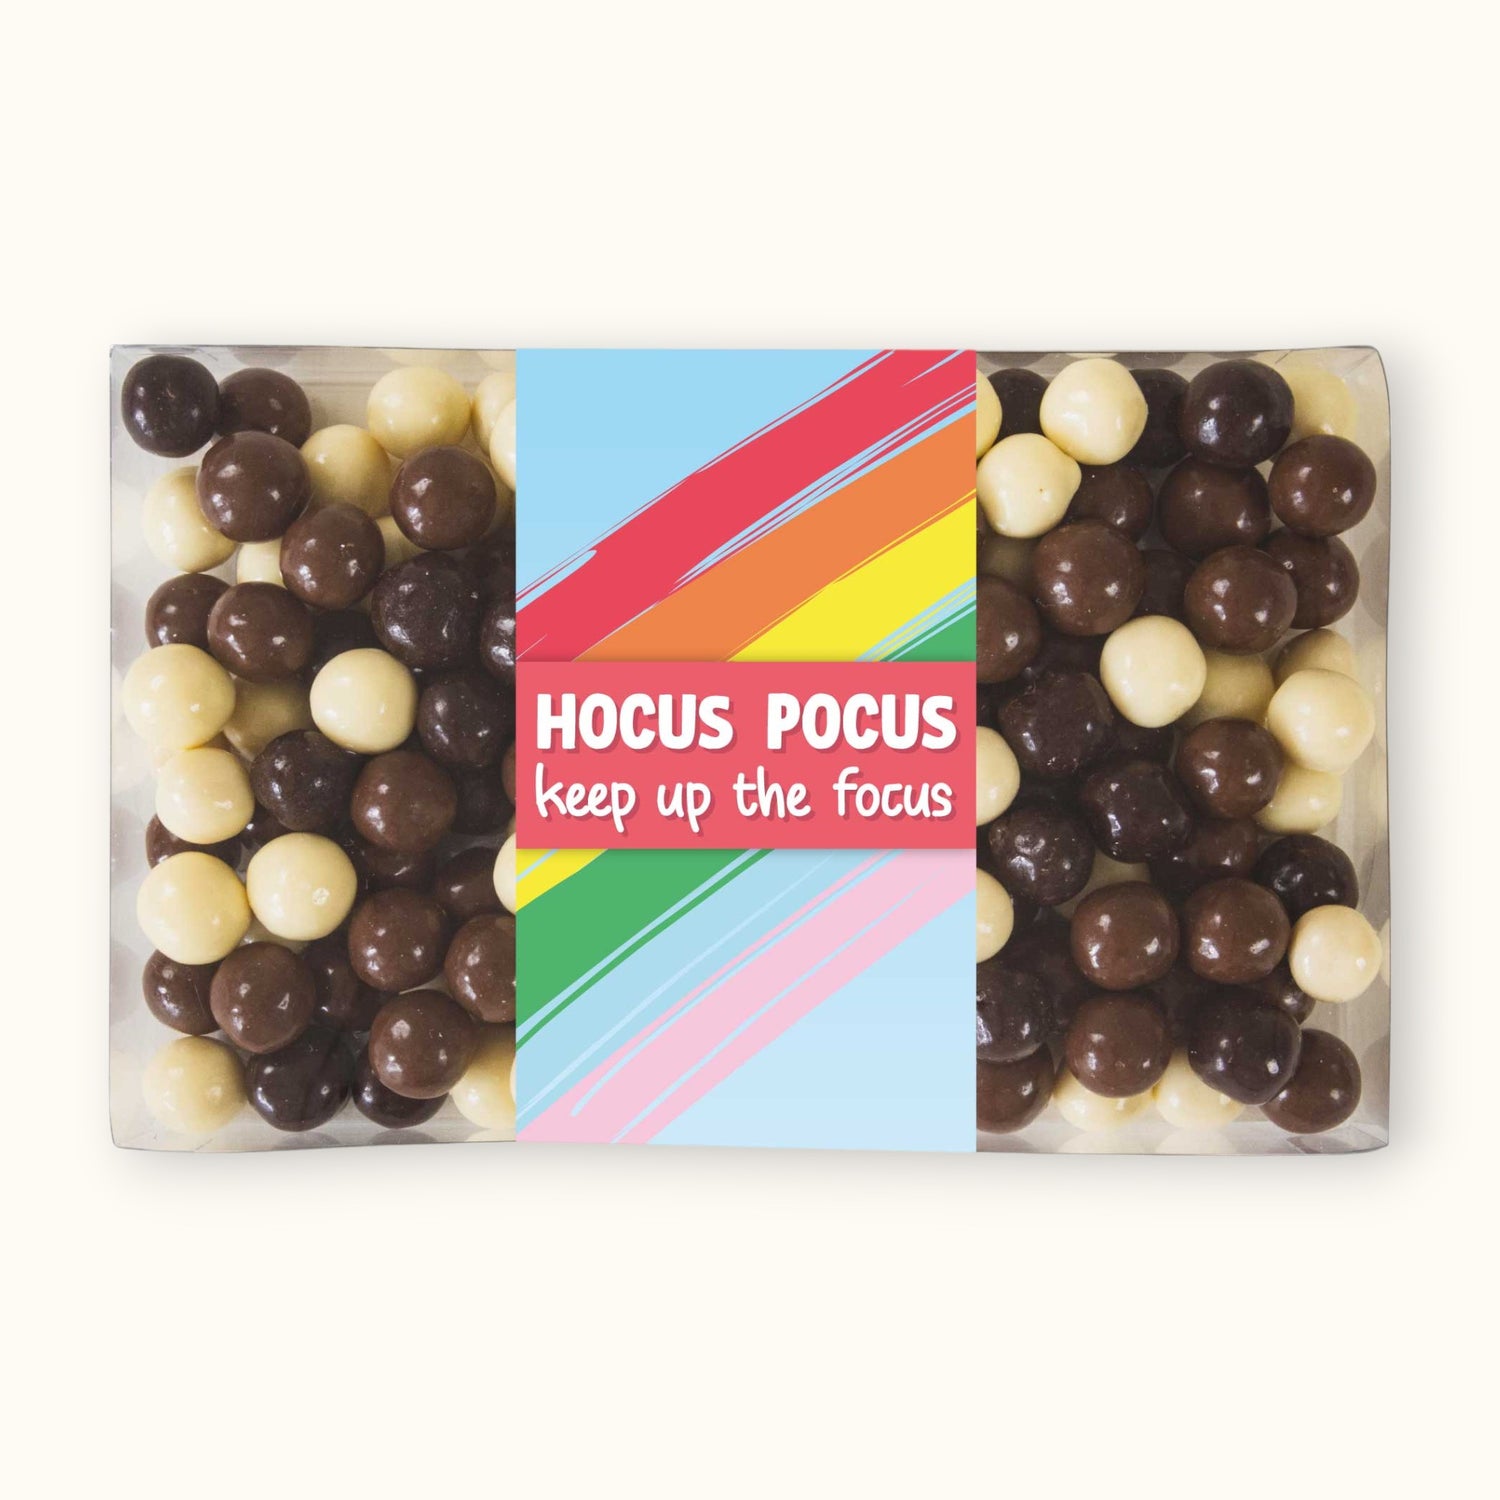 Doosje chocolade | Hocus pocus, keep up the focus!